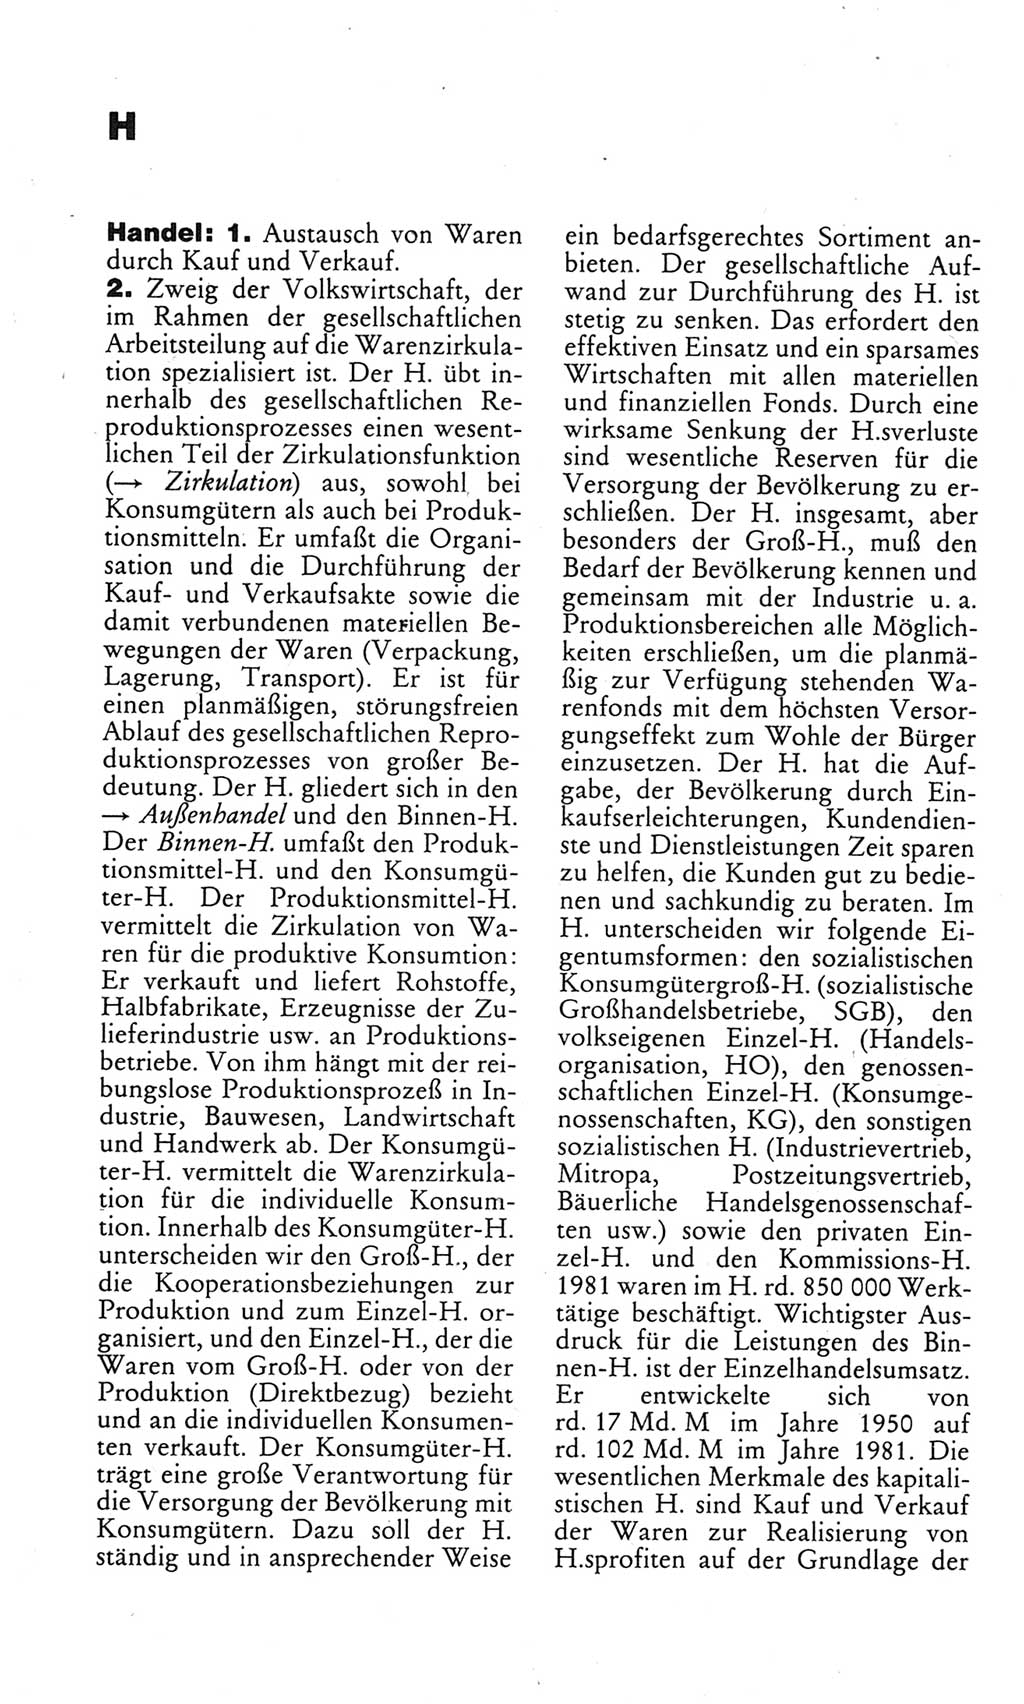 Kleines politisches Wörterbuch [Deutsche Demokratische Republik (DDR)] 1983, Seite 368 (Kl. pol. Wb. DDR 1983, S. 368)